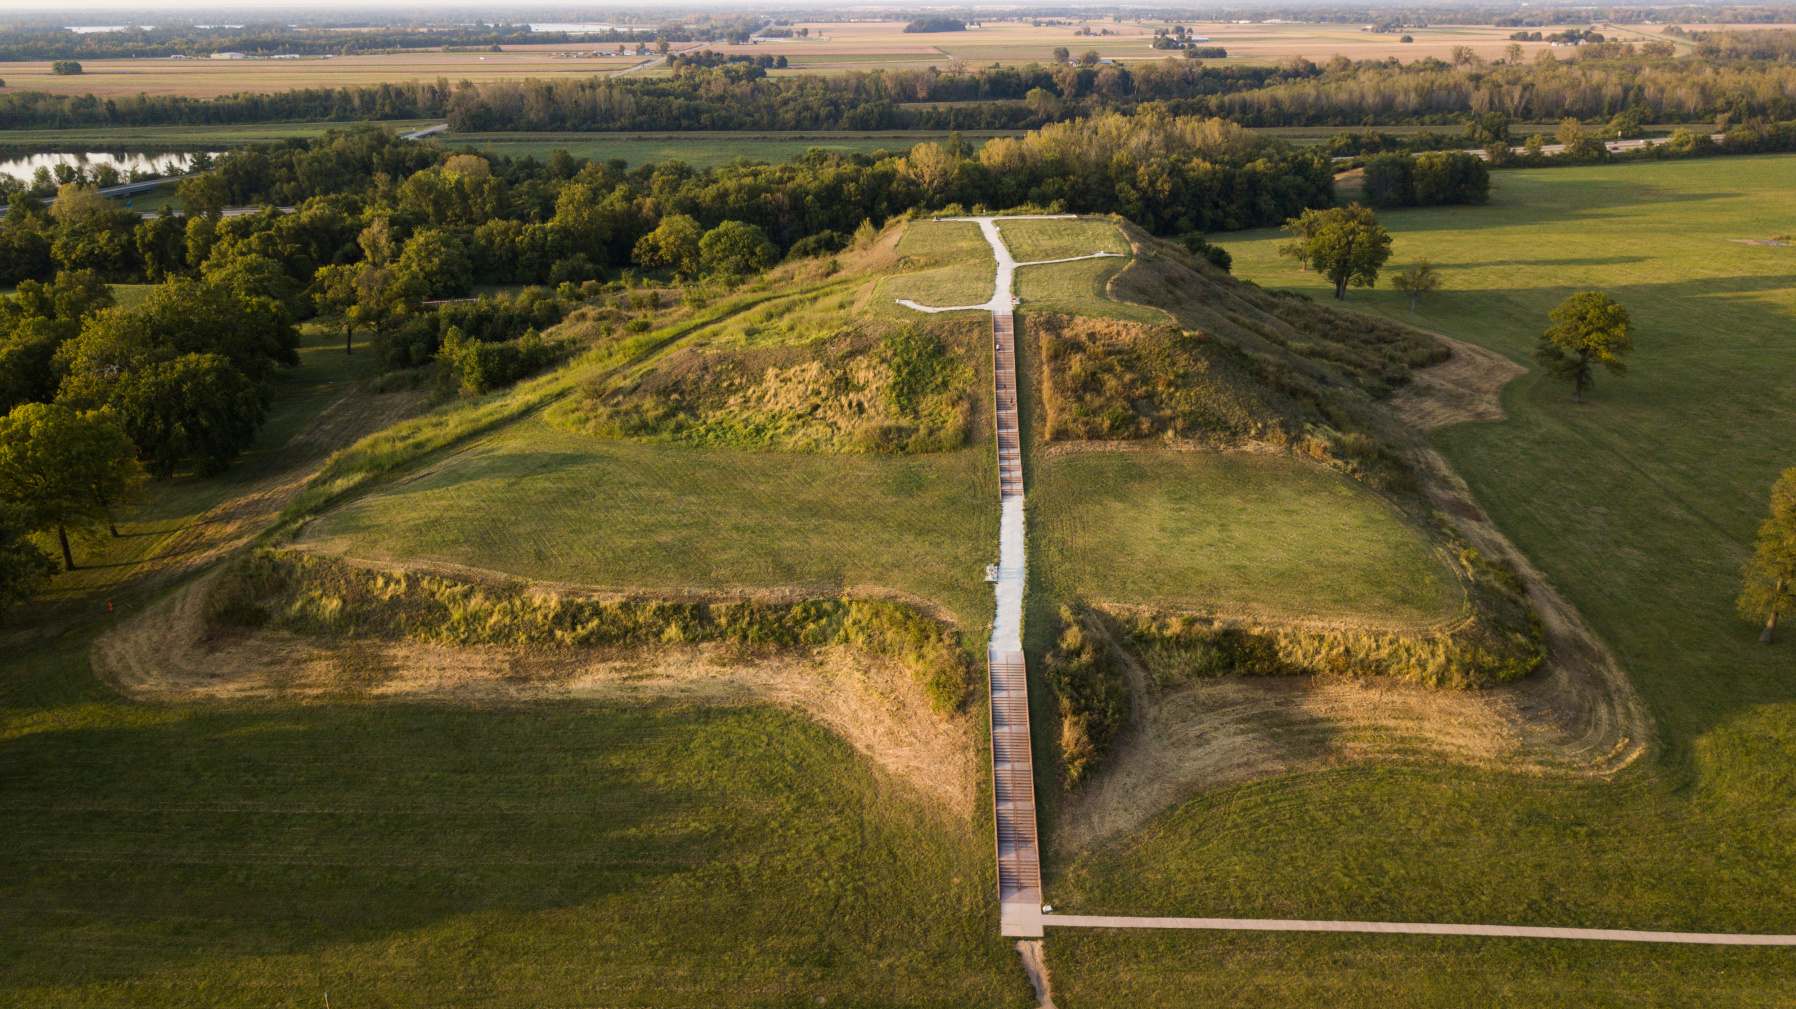 Monks Mound, gebaut tëscht 950 an 1100 CE a läit um Cahokia Mounds UNESCO Welterbe Site bei Collinsville, Illinois, ass de gréisste pre-kolumbianesch Äerdwierk an Amerika nërdlech vu Mesoamerika. Eng Zuel vu pre-kolumbianesche Kulture gi kollektiv als "Mound Builders" bezeechent.